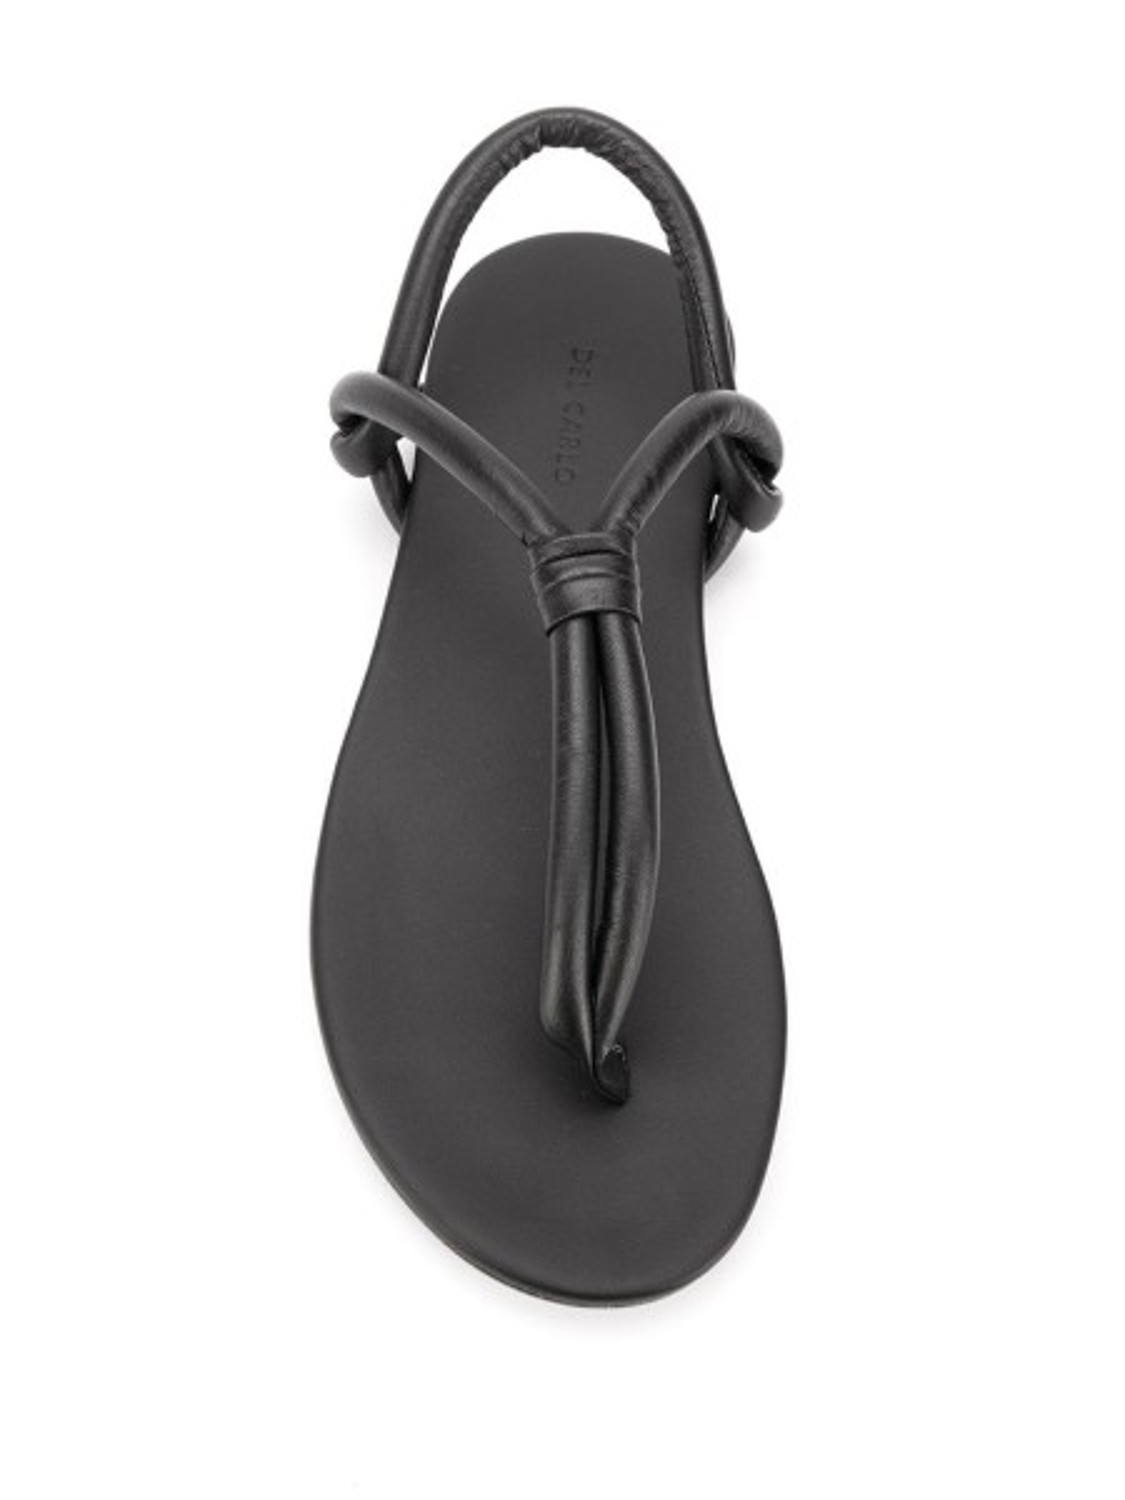 shop Del Carlo Sales Scarpe: Scarpe Del Carlo, sandalo a infradito, in pelle nera.

Composizione: 100% pelle number 1681